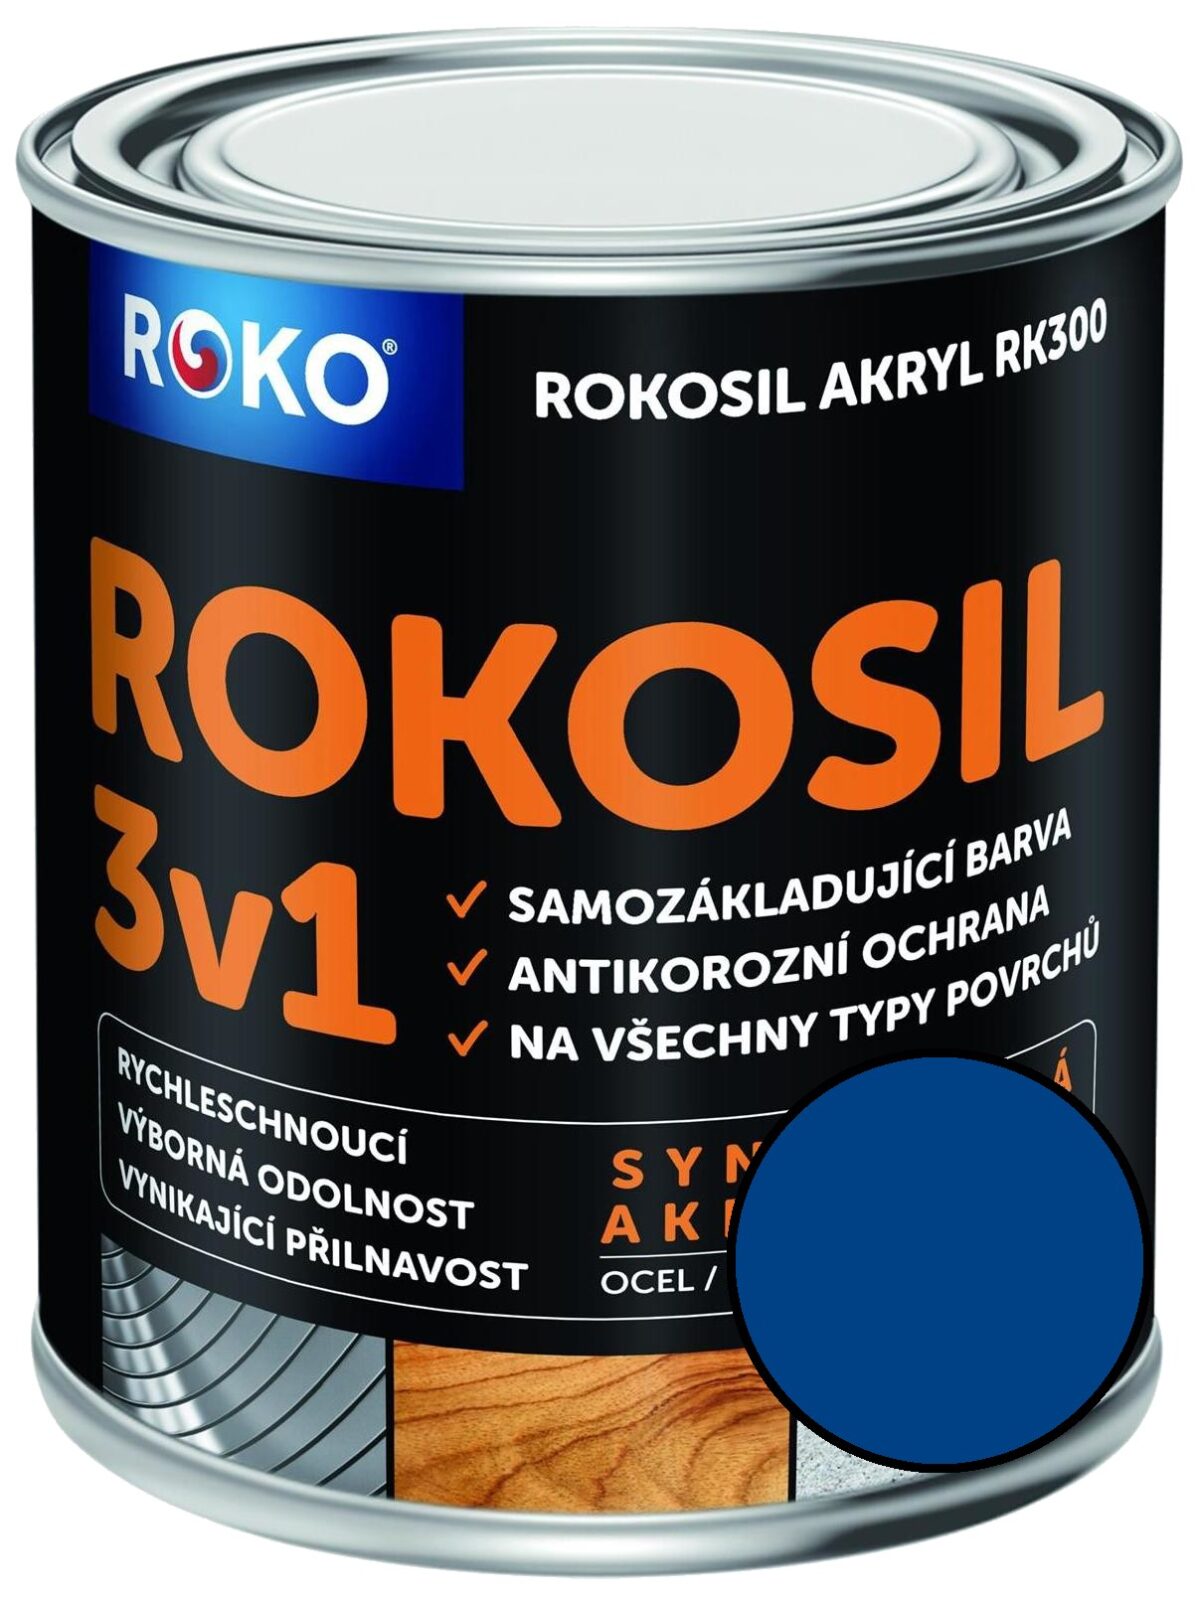 Barva samozákladující Rokosil akryl 3v1 RK 300 modrá 0